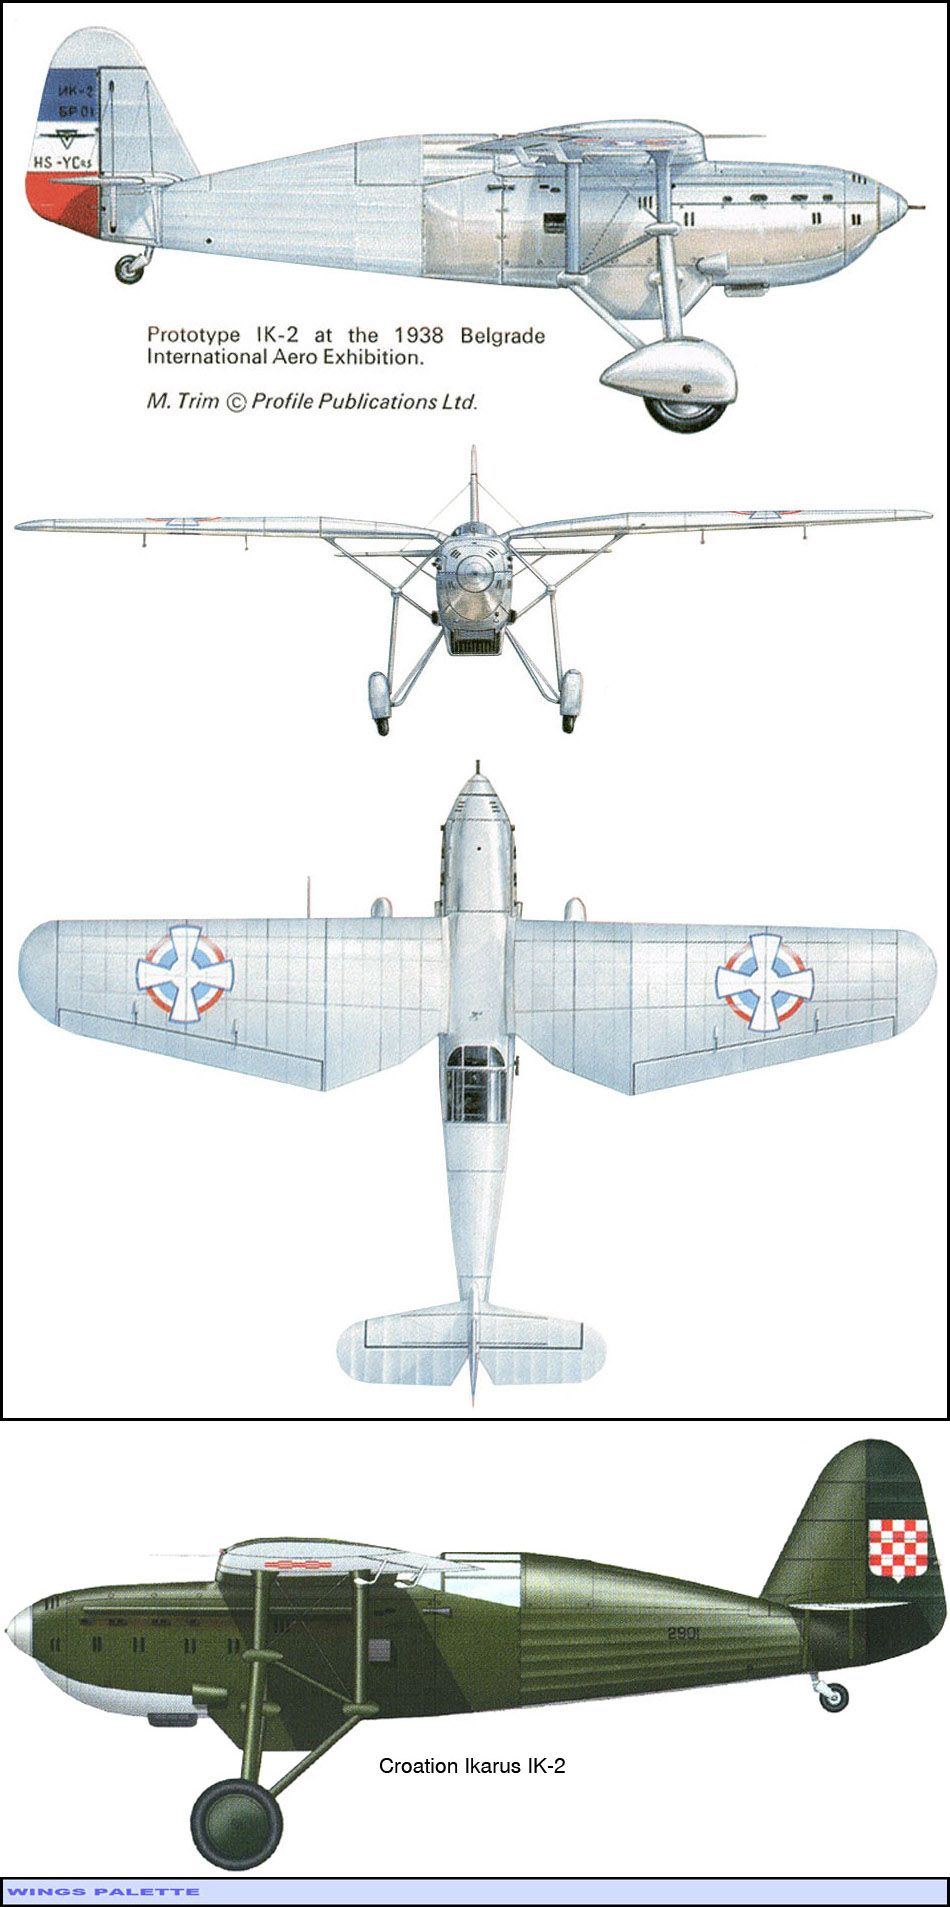 Ikarus IK-2 | Aircraft of World War II - WW2Aircraft.net Forums